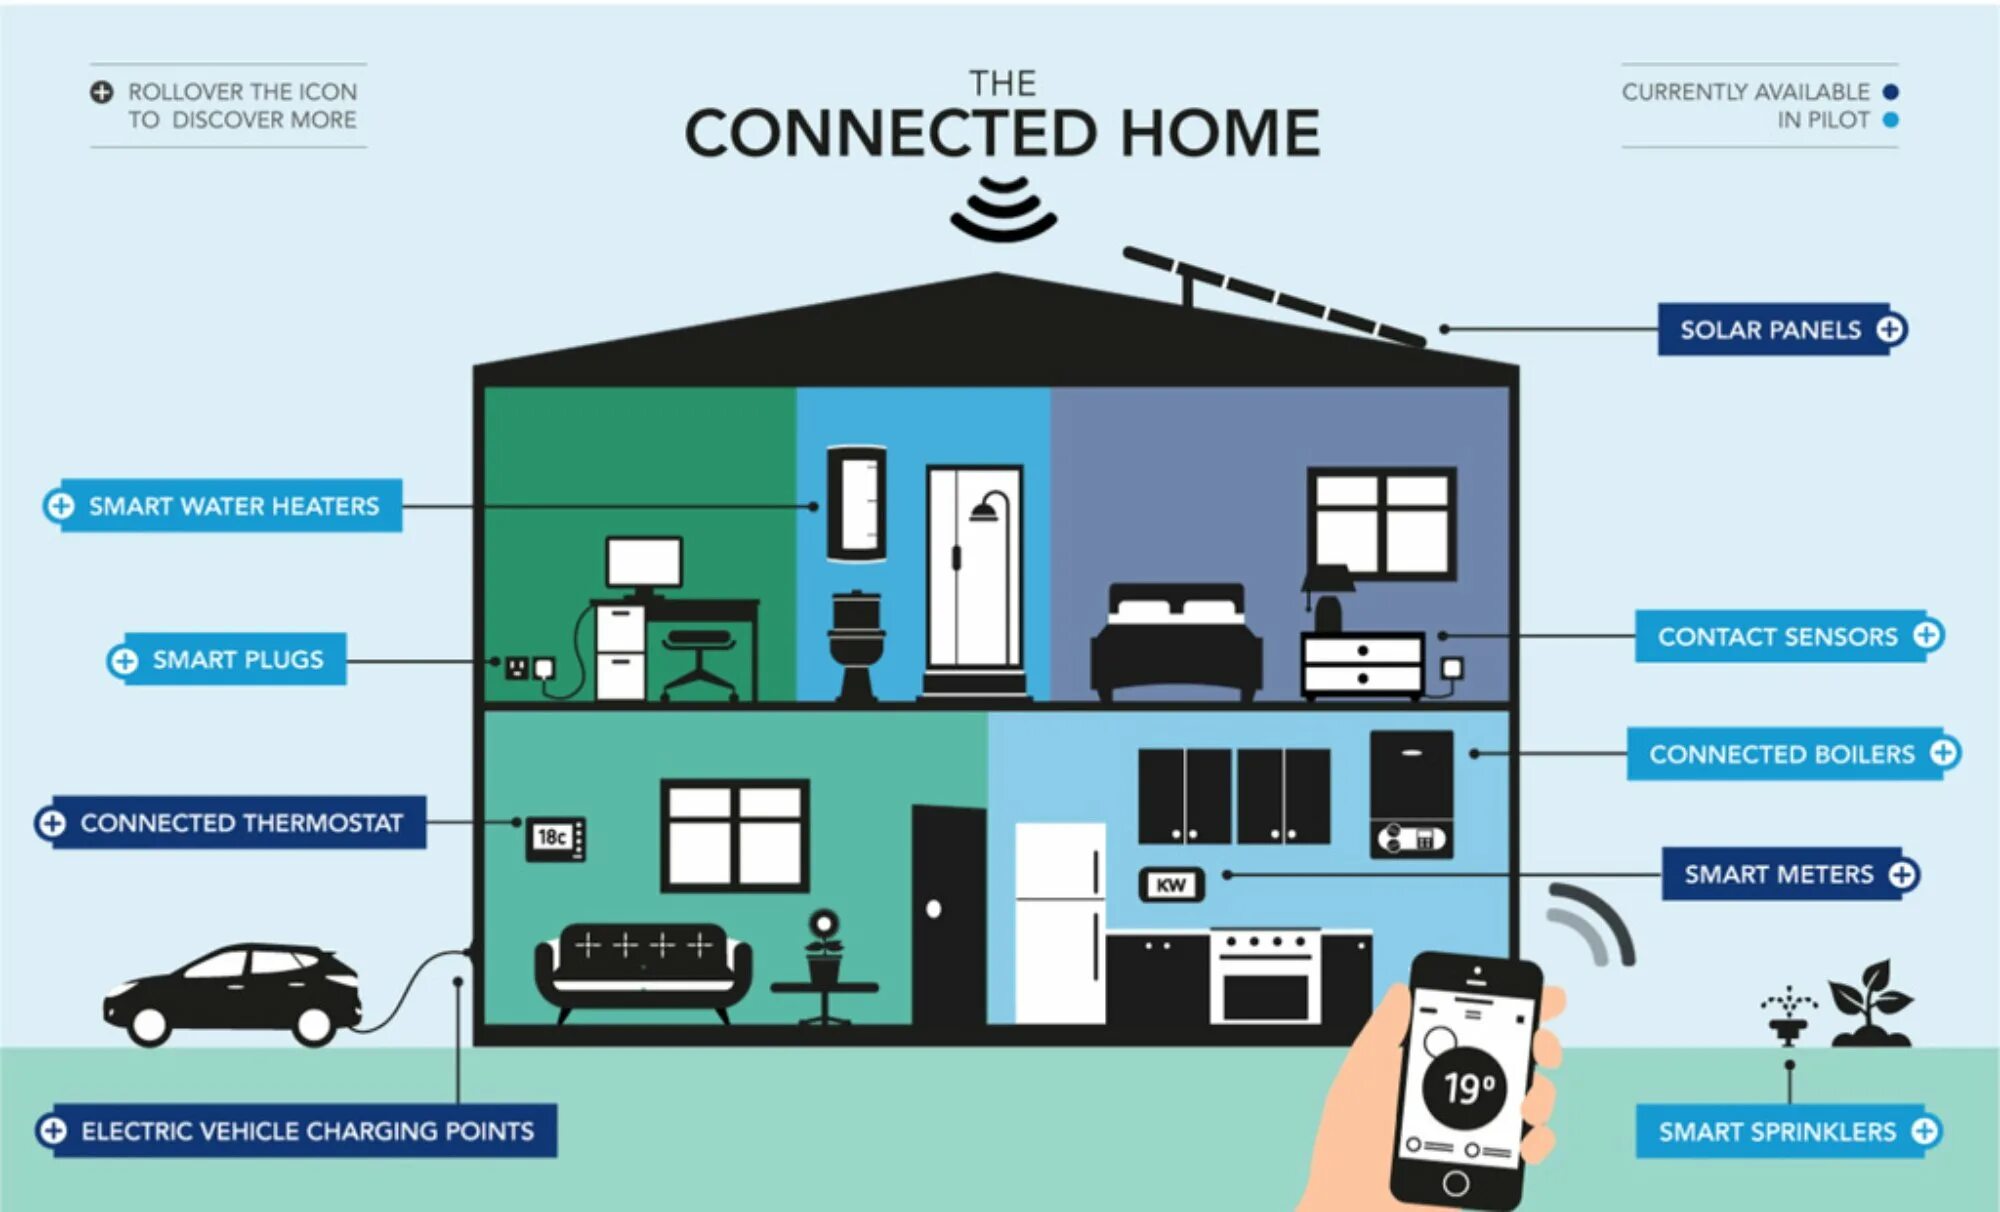 Home connections. Умный дом. IOT умный дом. IOT умные дома. Интернет вещей умный дом.